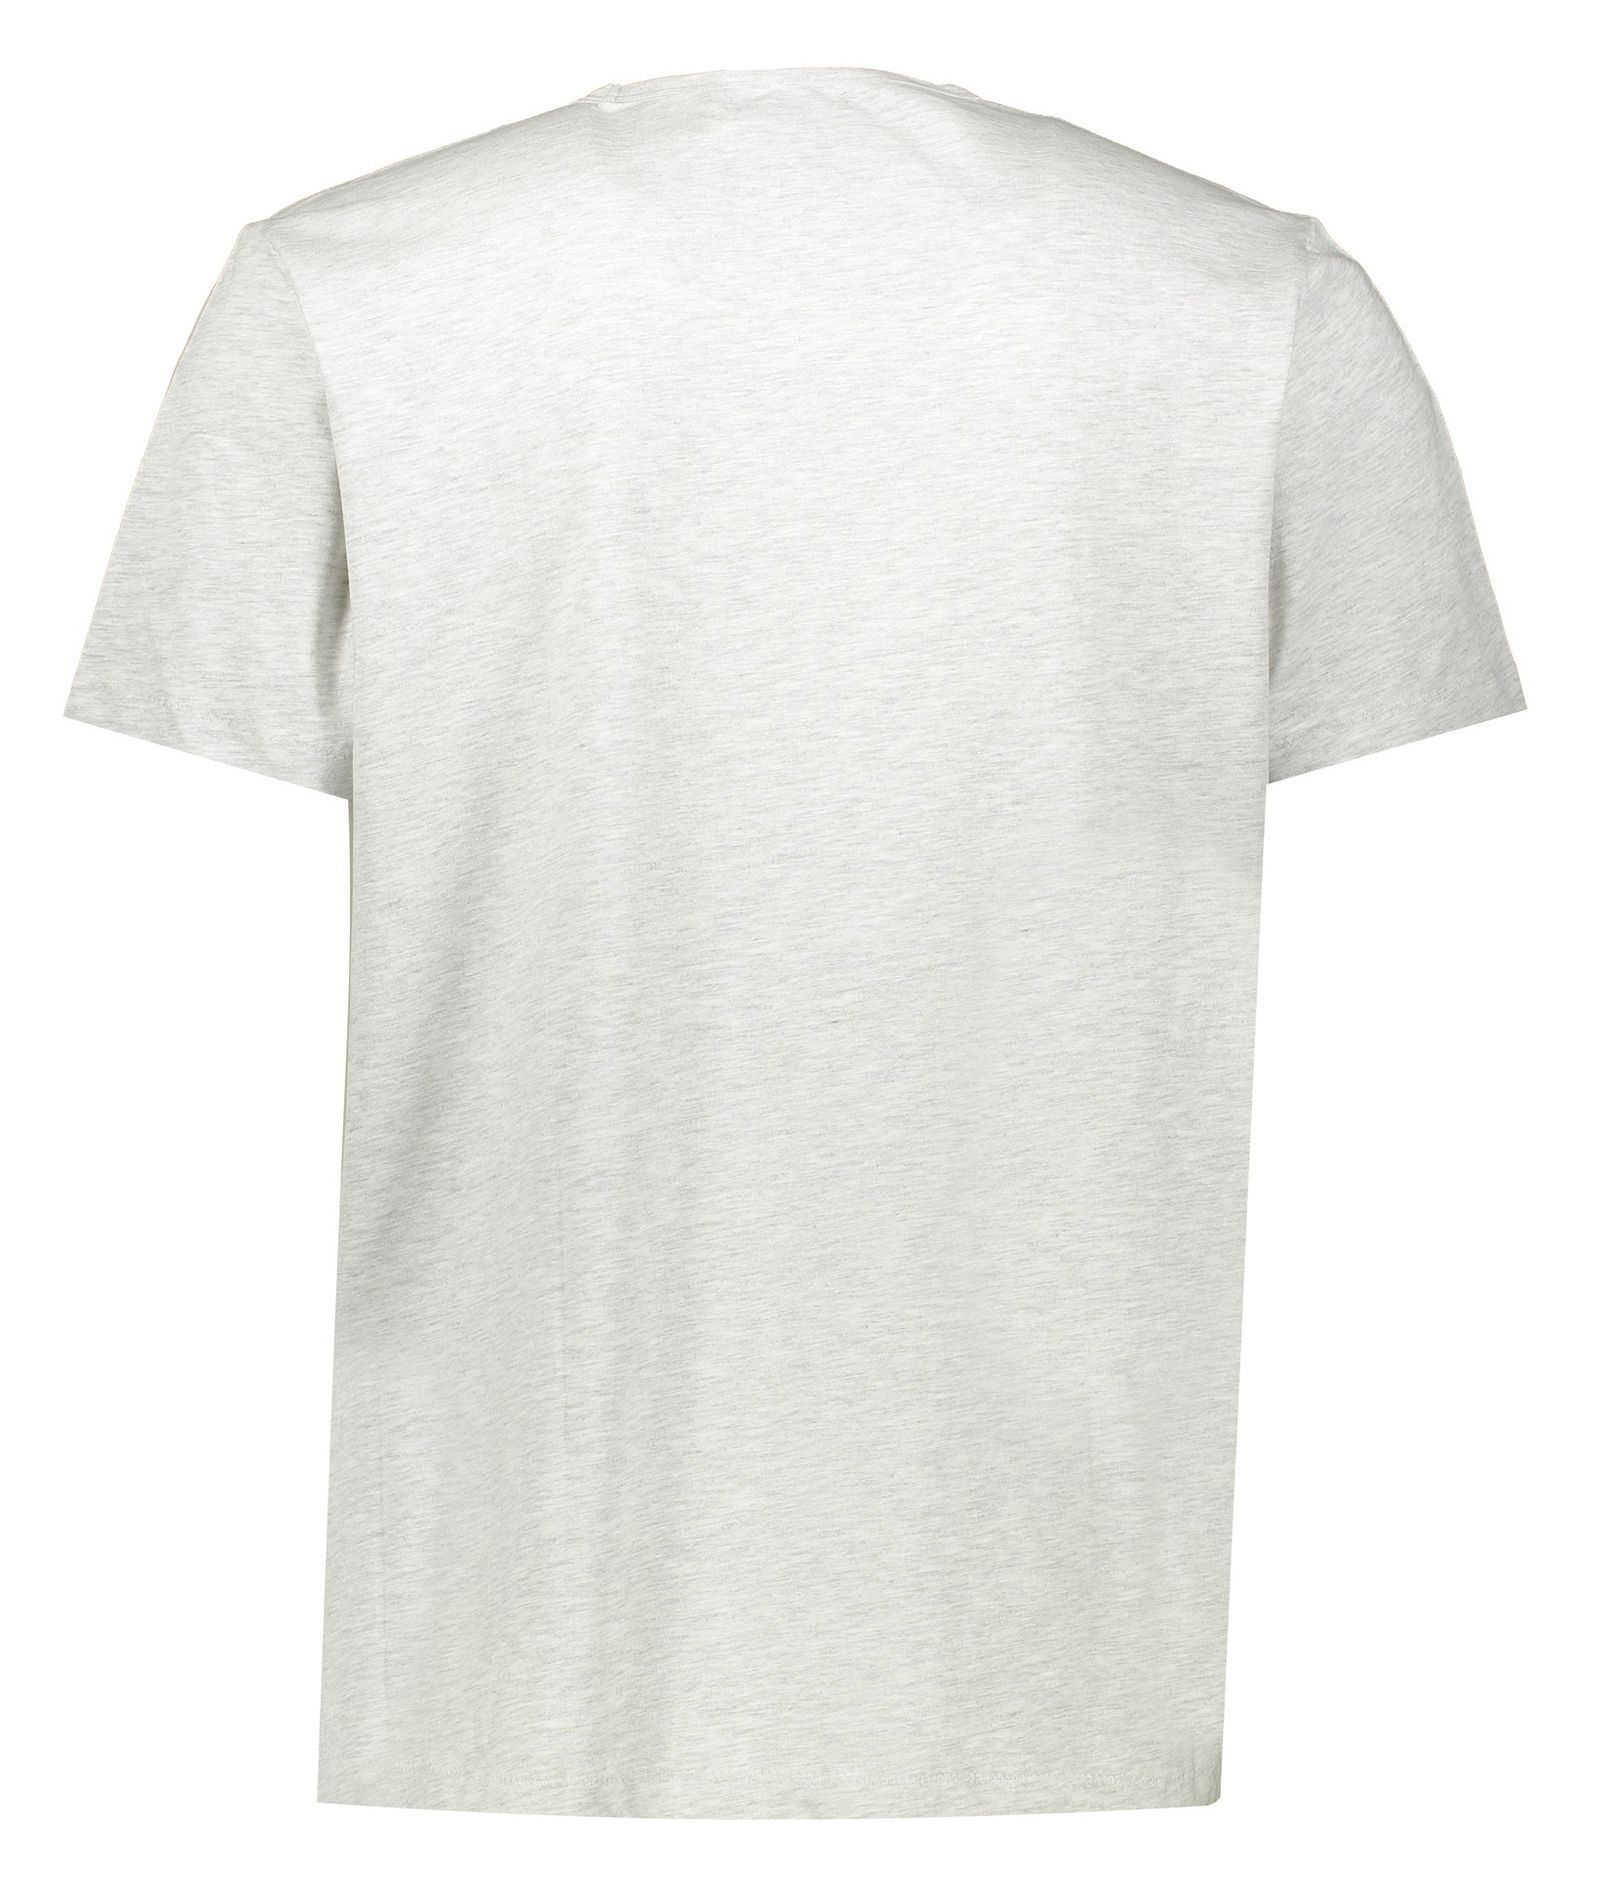 تی شرت مردانه یوپیم مدل 7066025 -  - 3